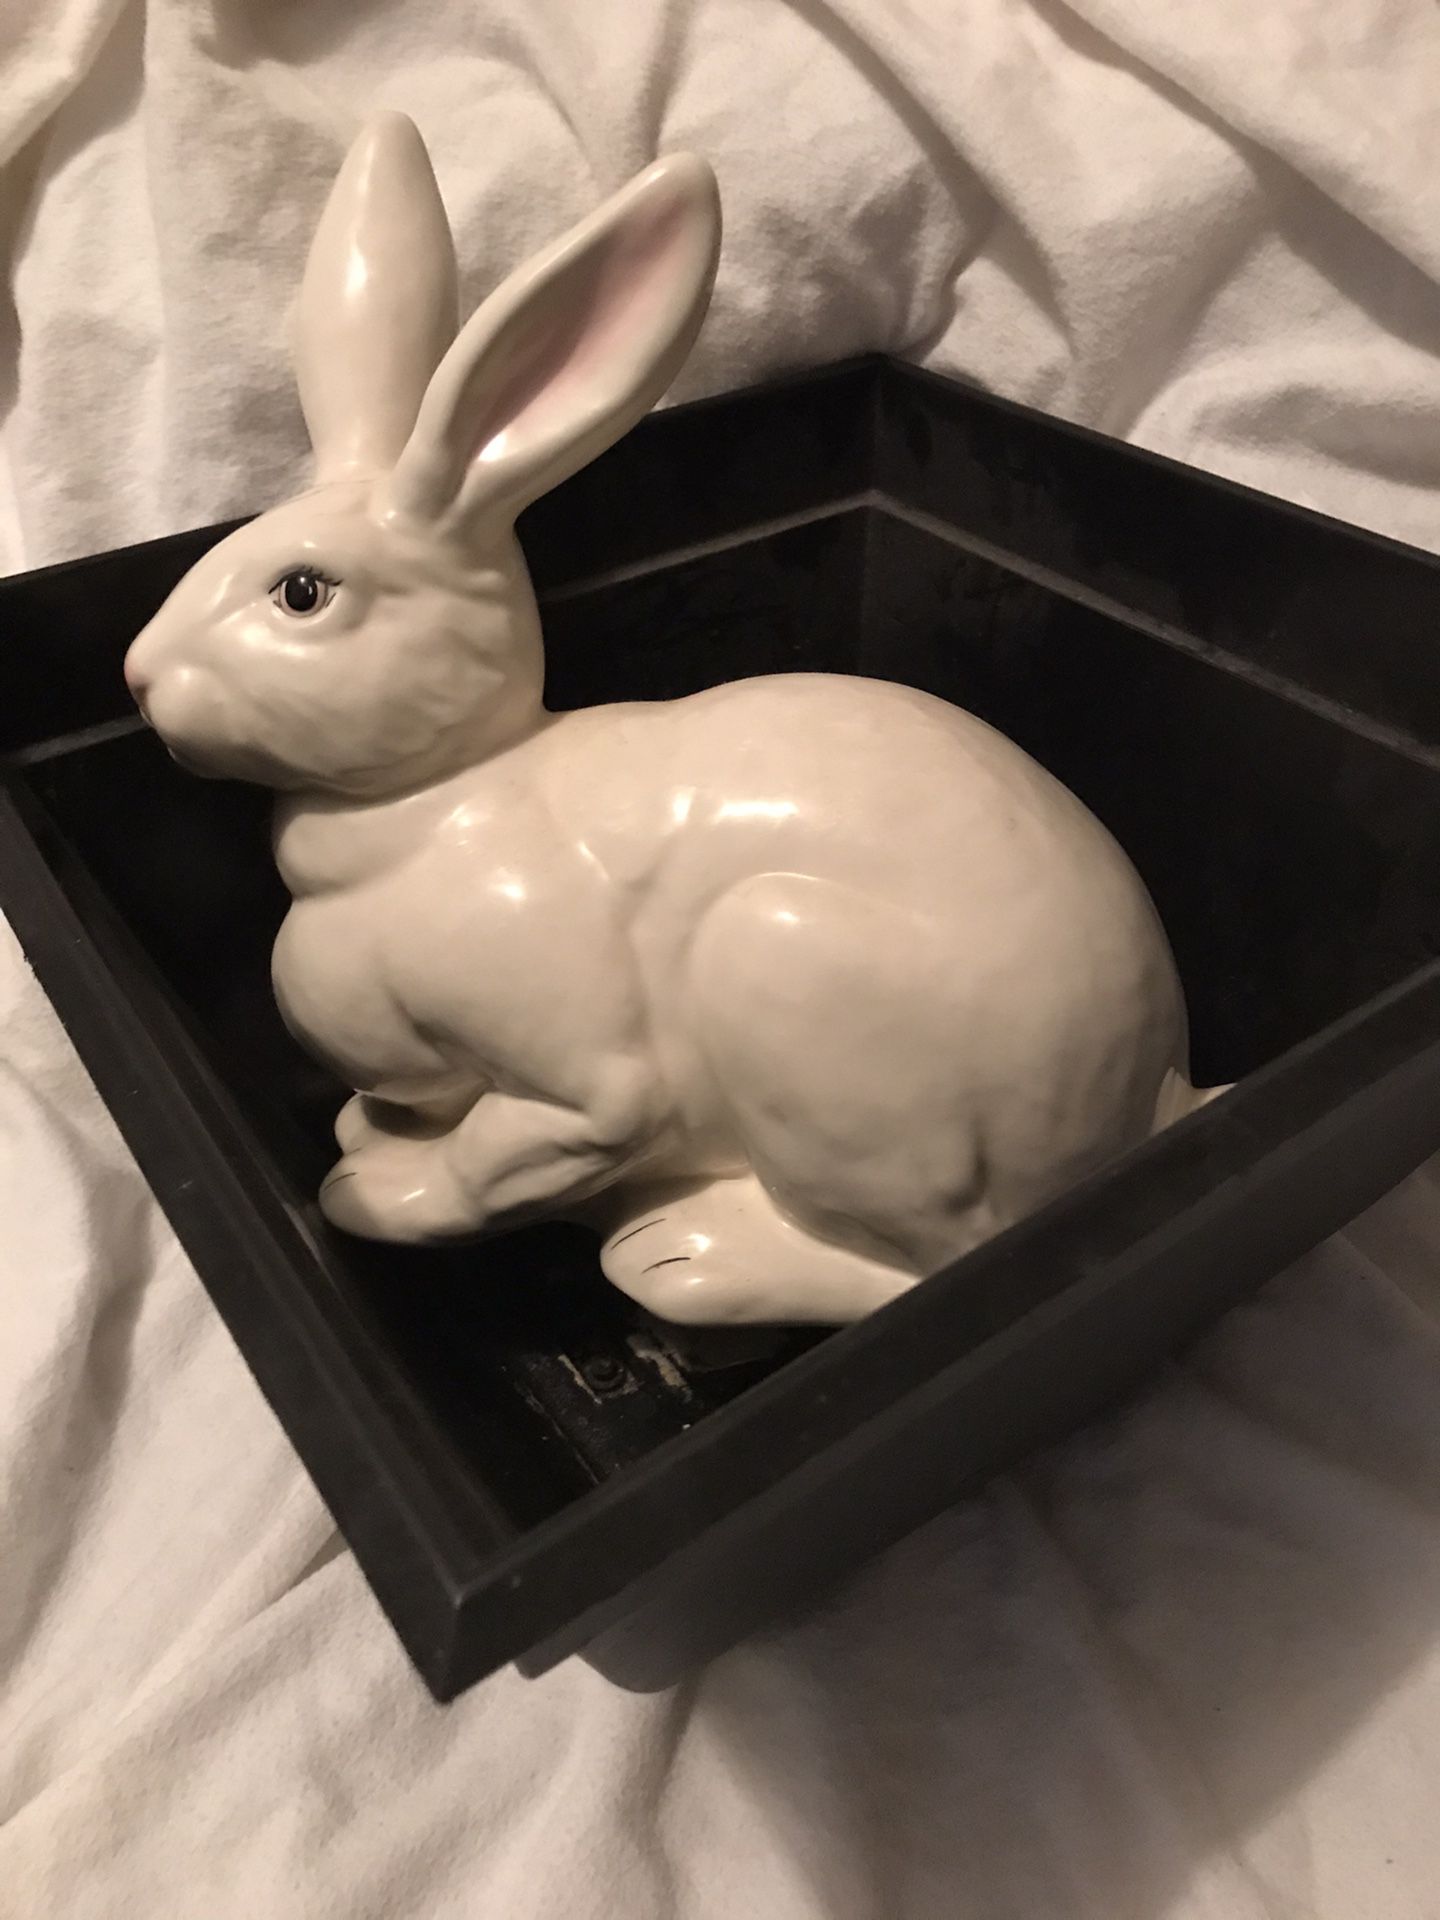 Ceramic rabbit and black flower pot together